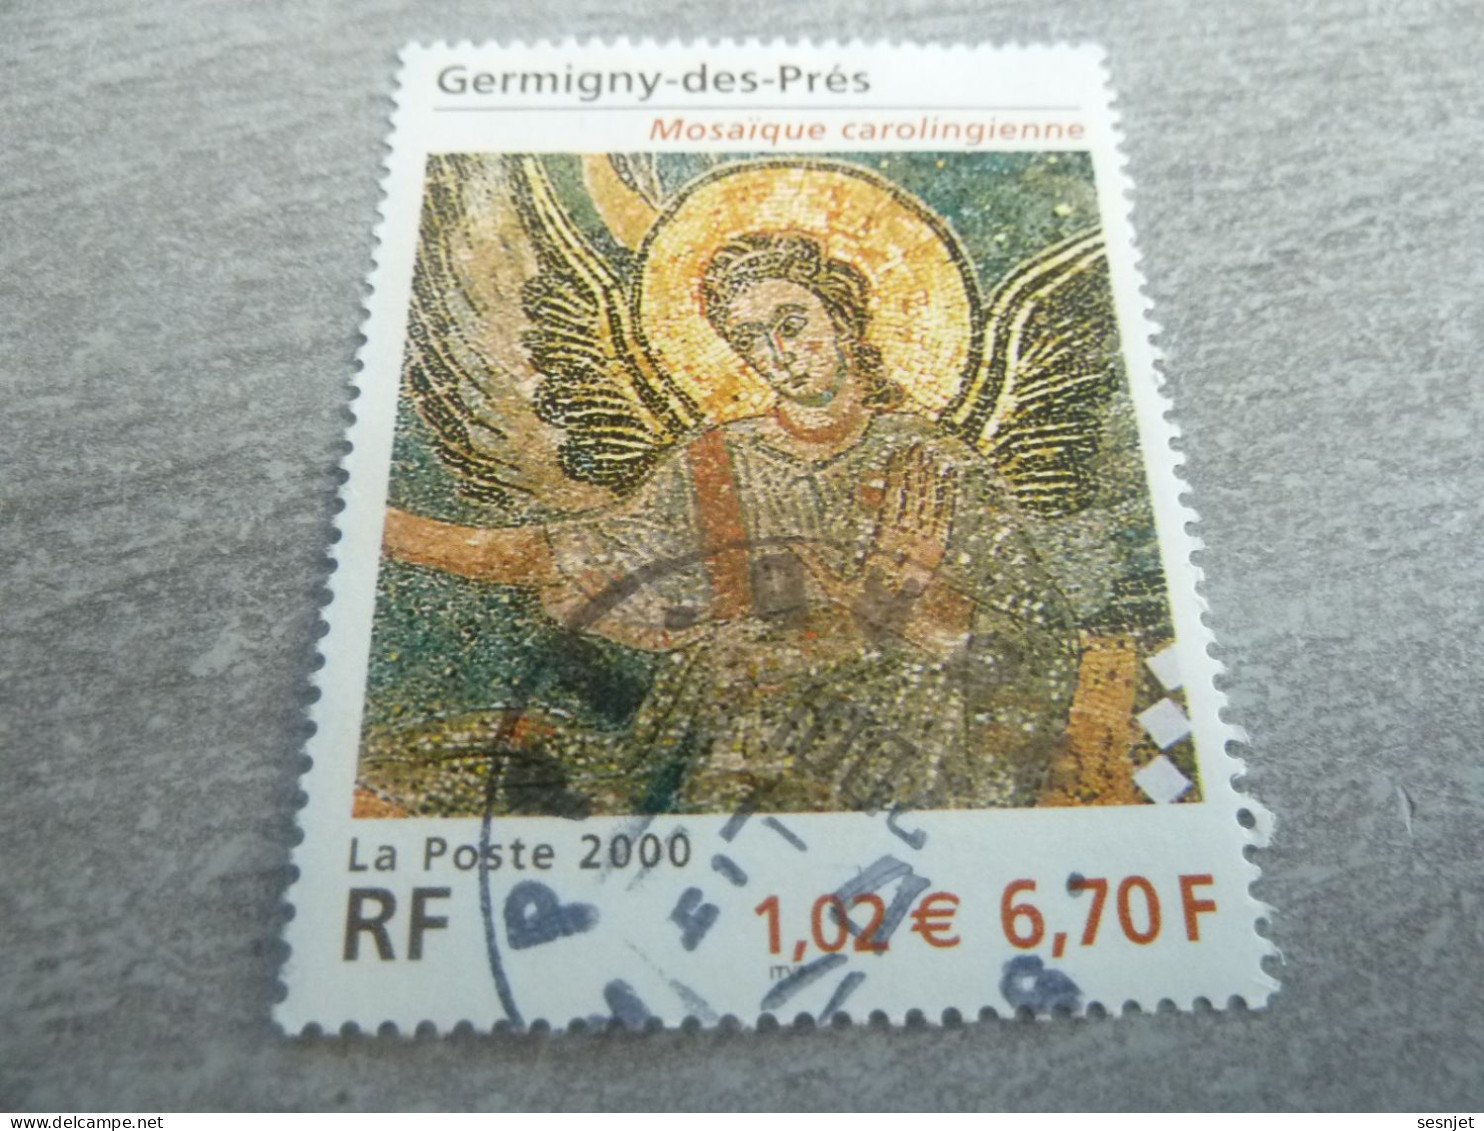 Germigny-des-Près (Loiret) - 6f.70 (1.02 €) - Yt 3358 - Multicolore - Oblitéré - Année 2000 - - Gebraucht